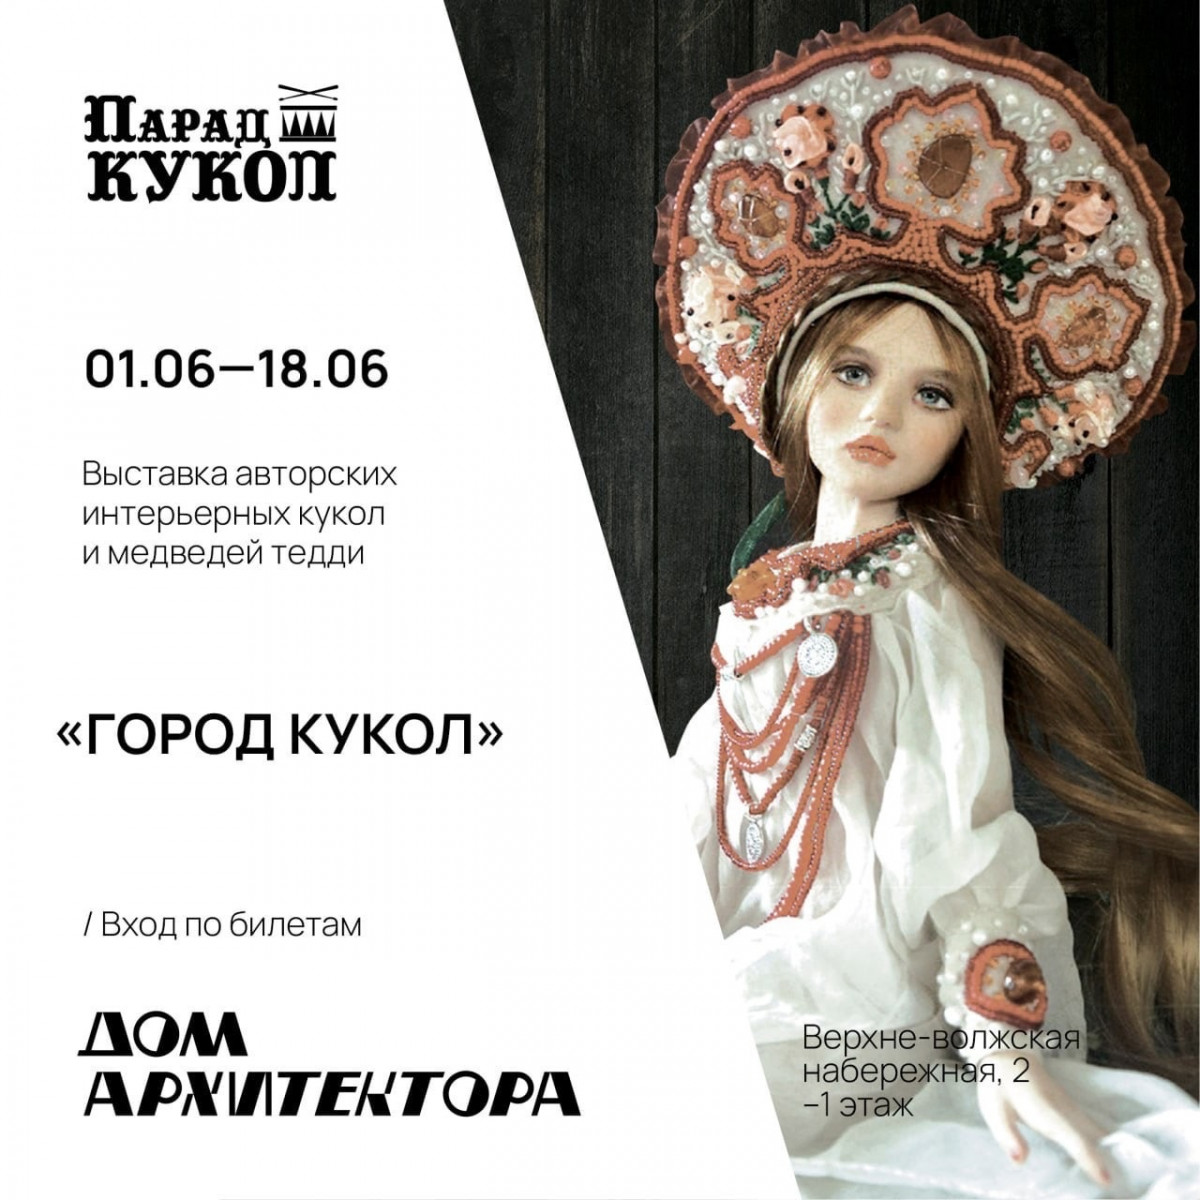 Выставка «Город кукол» откроется в Нижнем Новгороде 1 июня